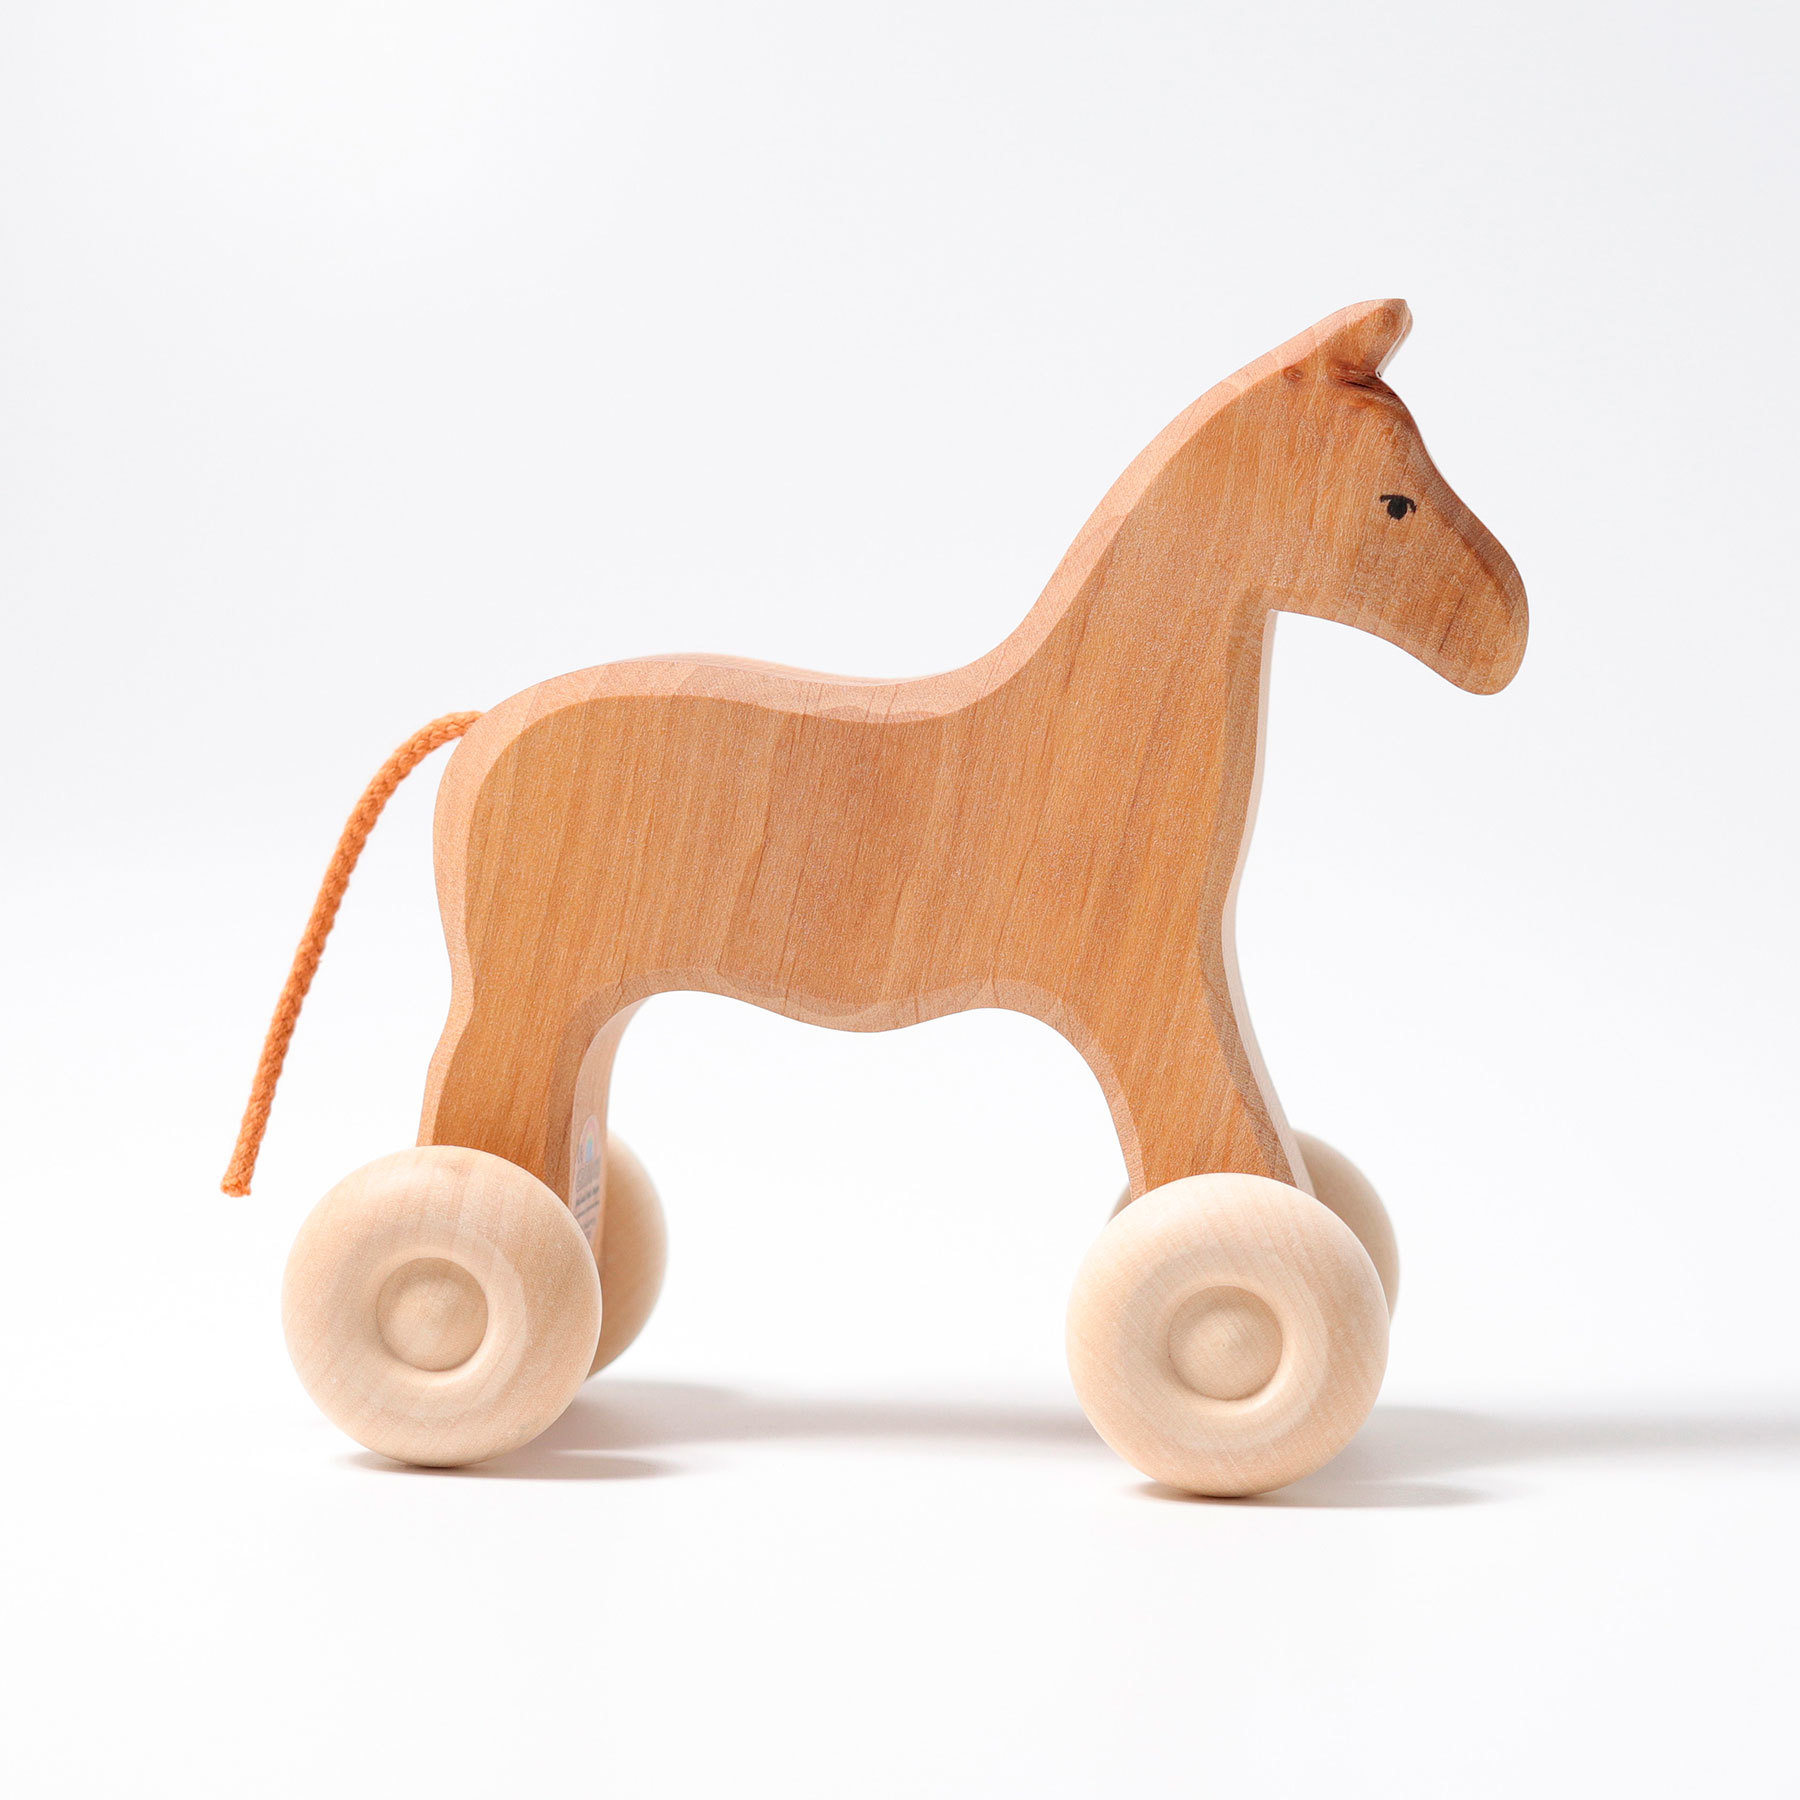 Детская деревянная лошадка качалка со спинкой из массива бука